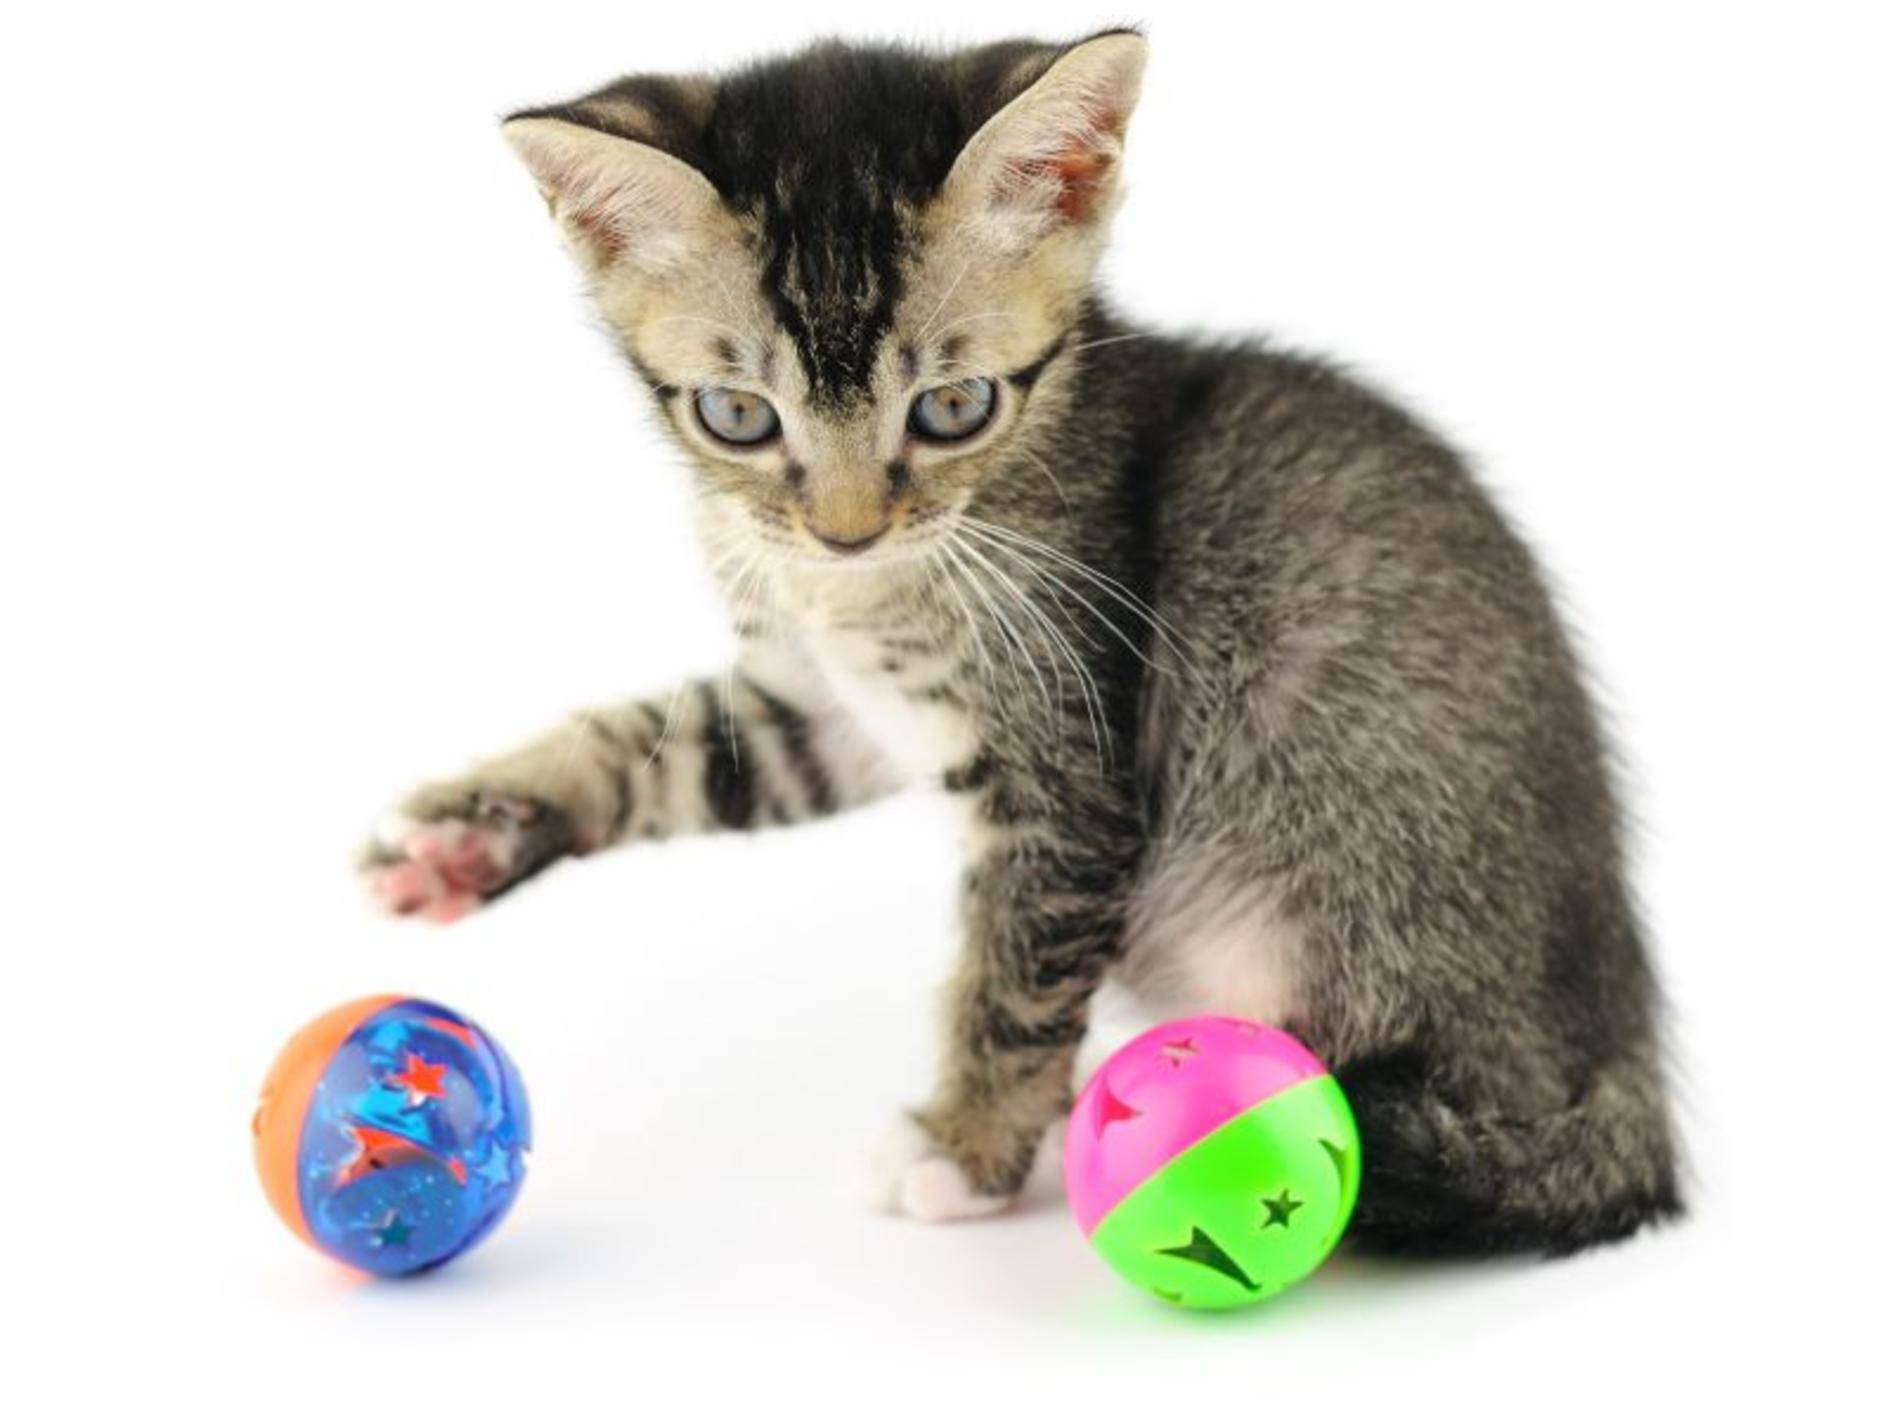 Katzenspielzeug zum Befüllen mit Snacks – Bild: Shutterstock / orman Chan